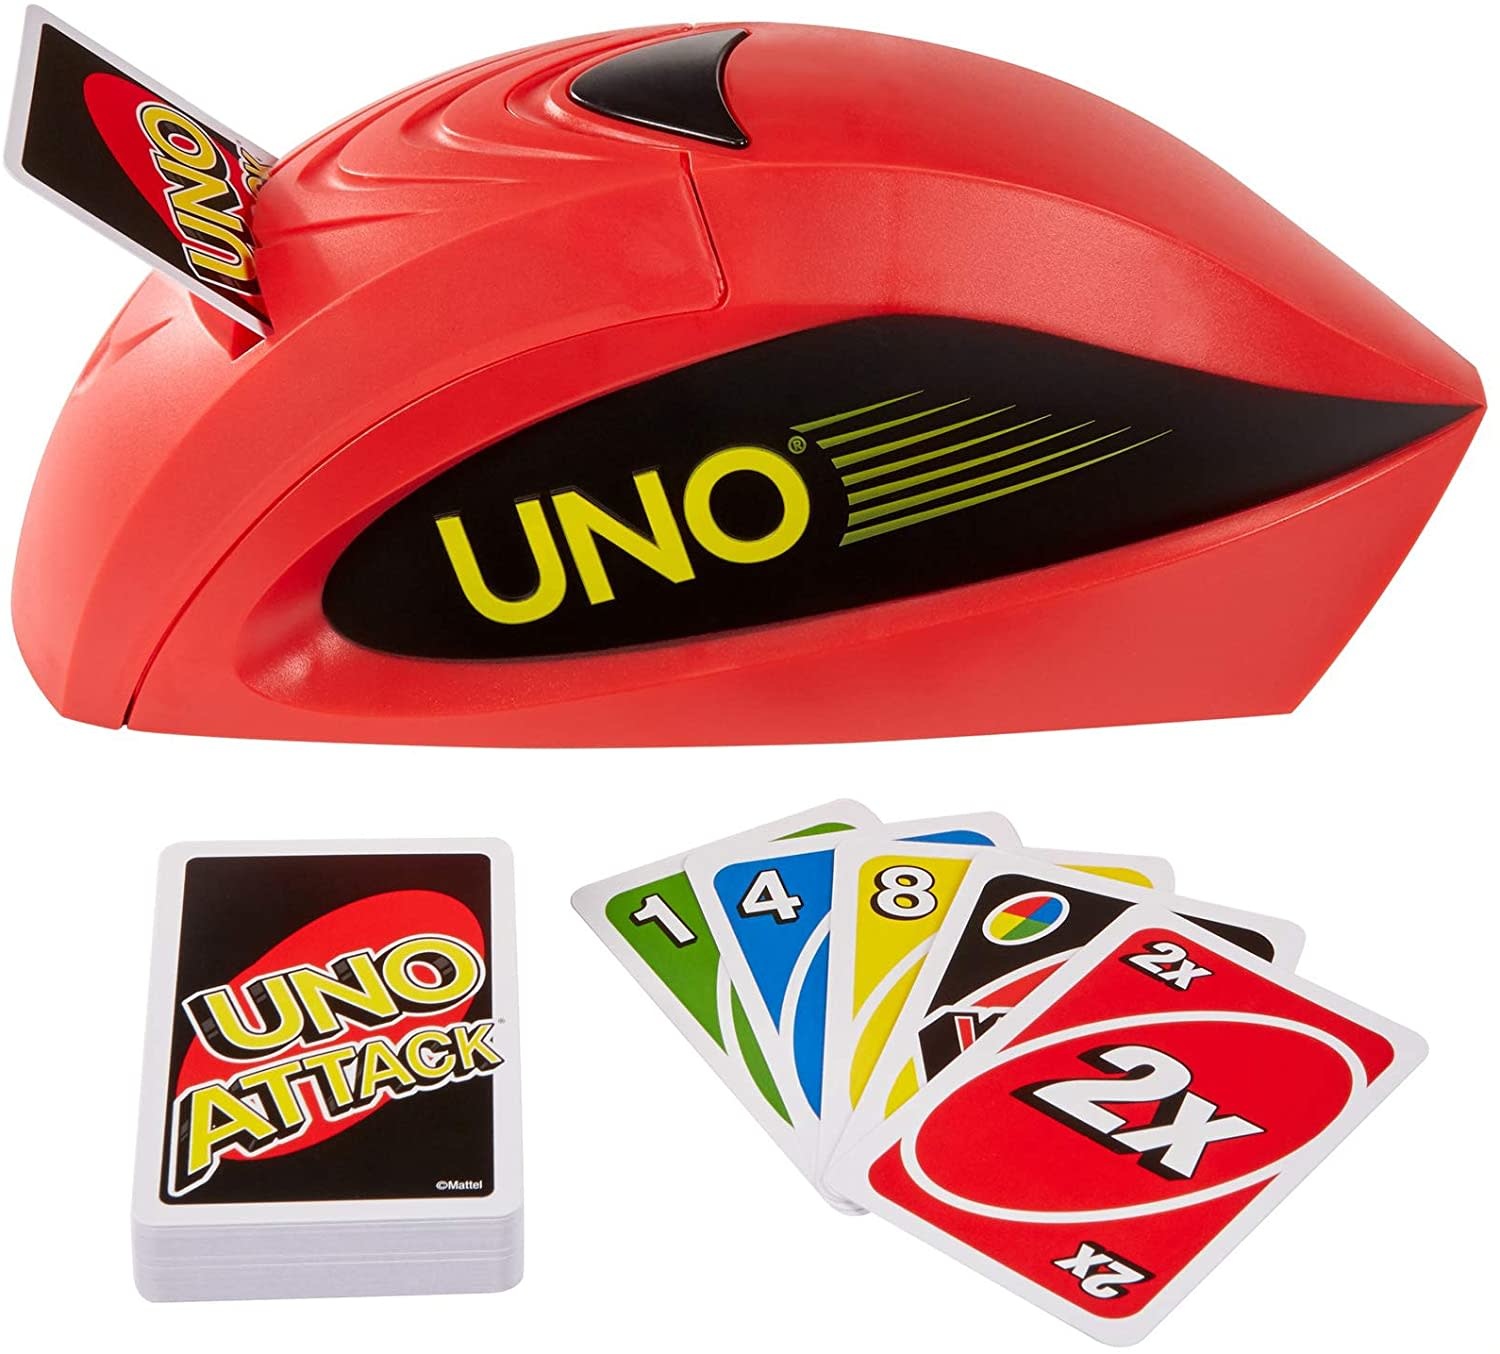 UNO Attack! Card Game